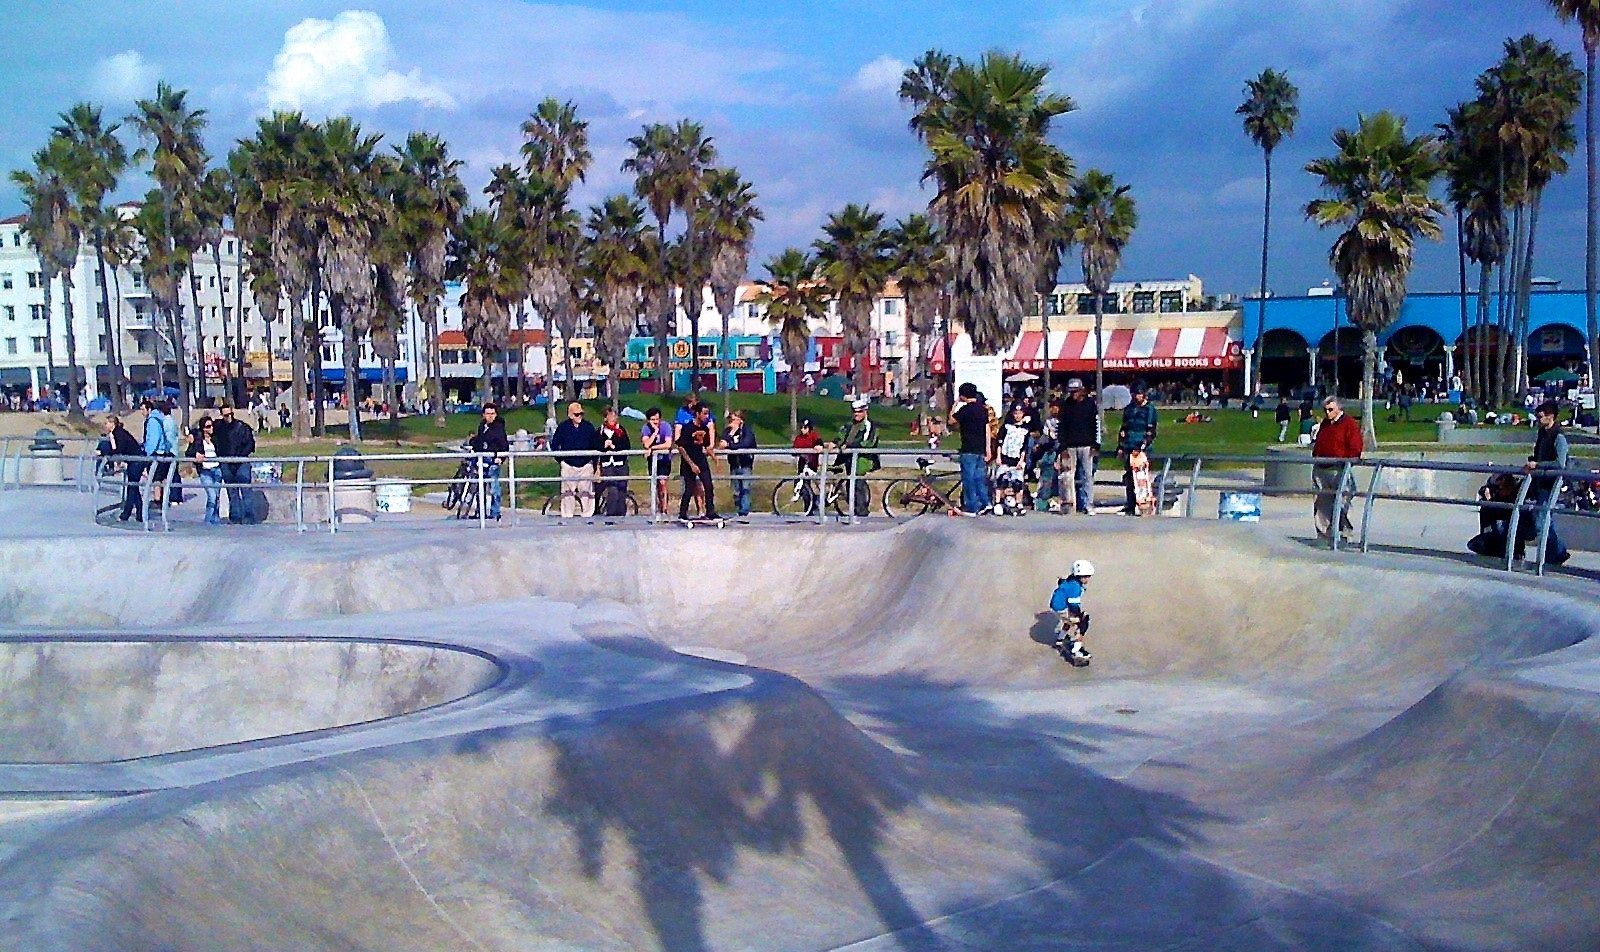 Skatepark a Venice Beach (Los Angeles, California, USA)